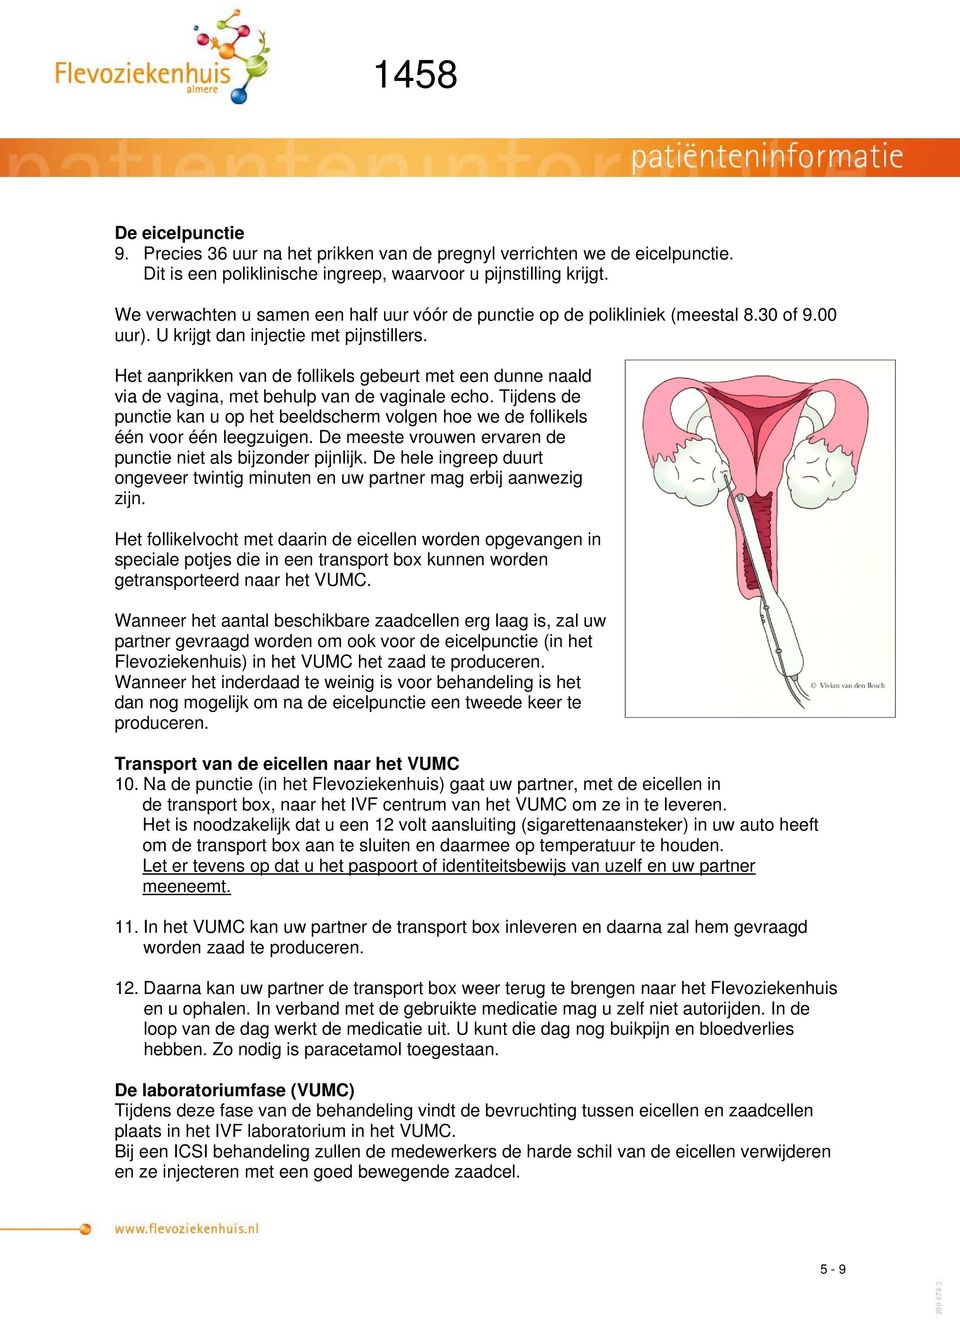 Het aanprikken van de follikels gebeurt met een dunne naald via de vagina, met behulp van de vaginale echo.